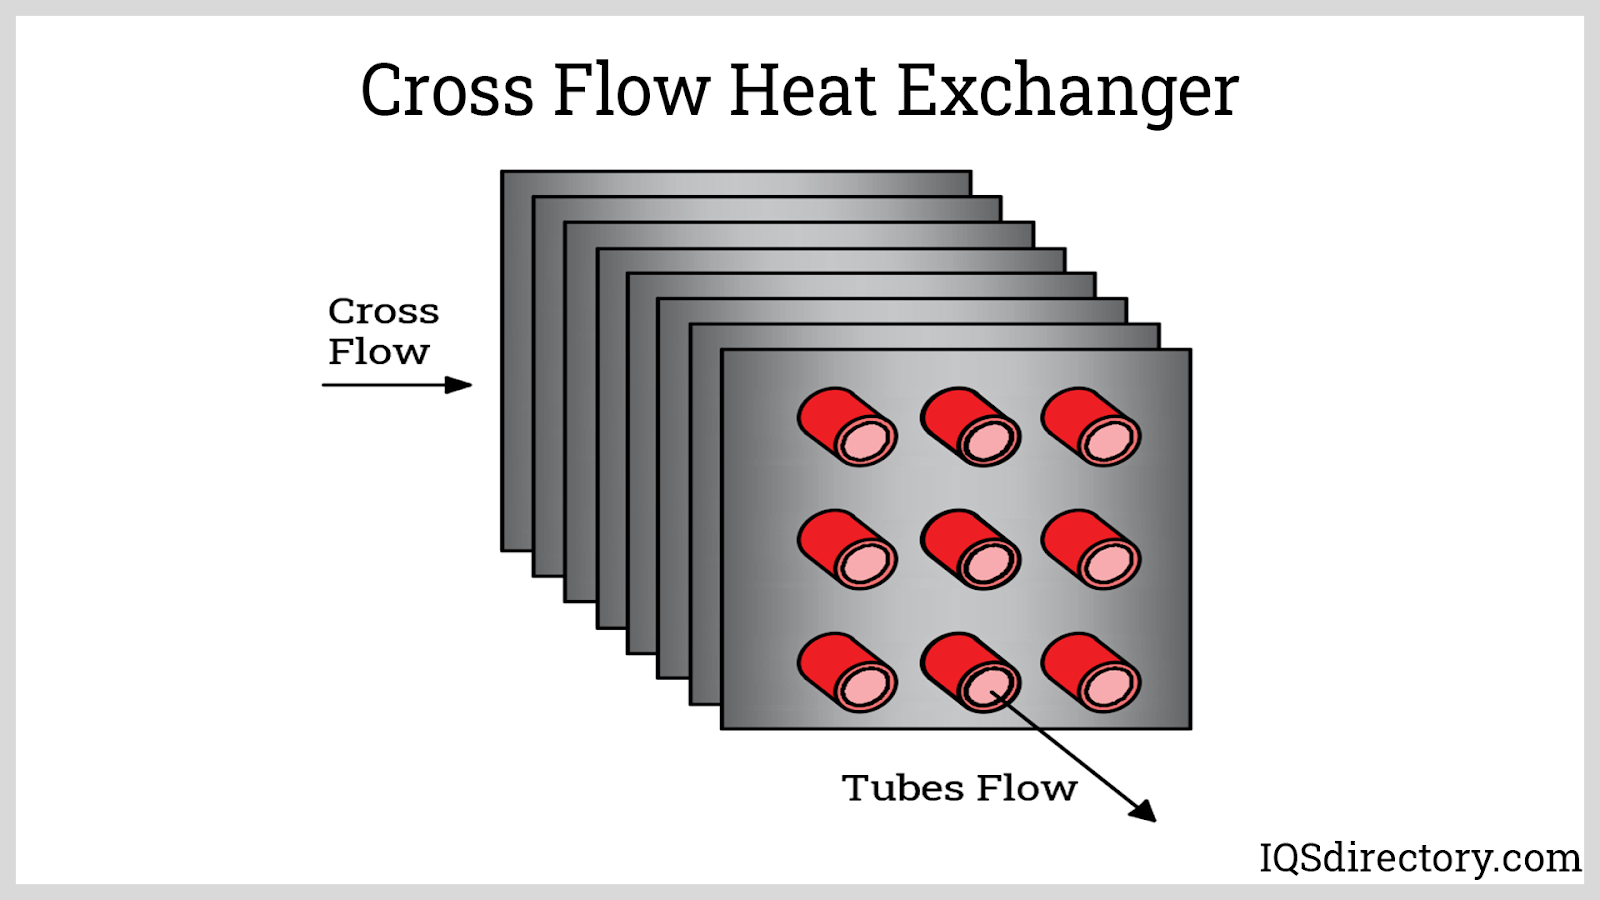 Cross Flow Heat Exchanger